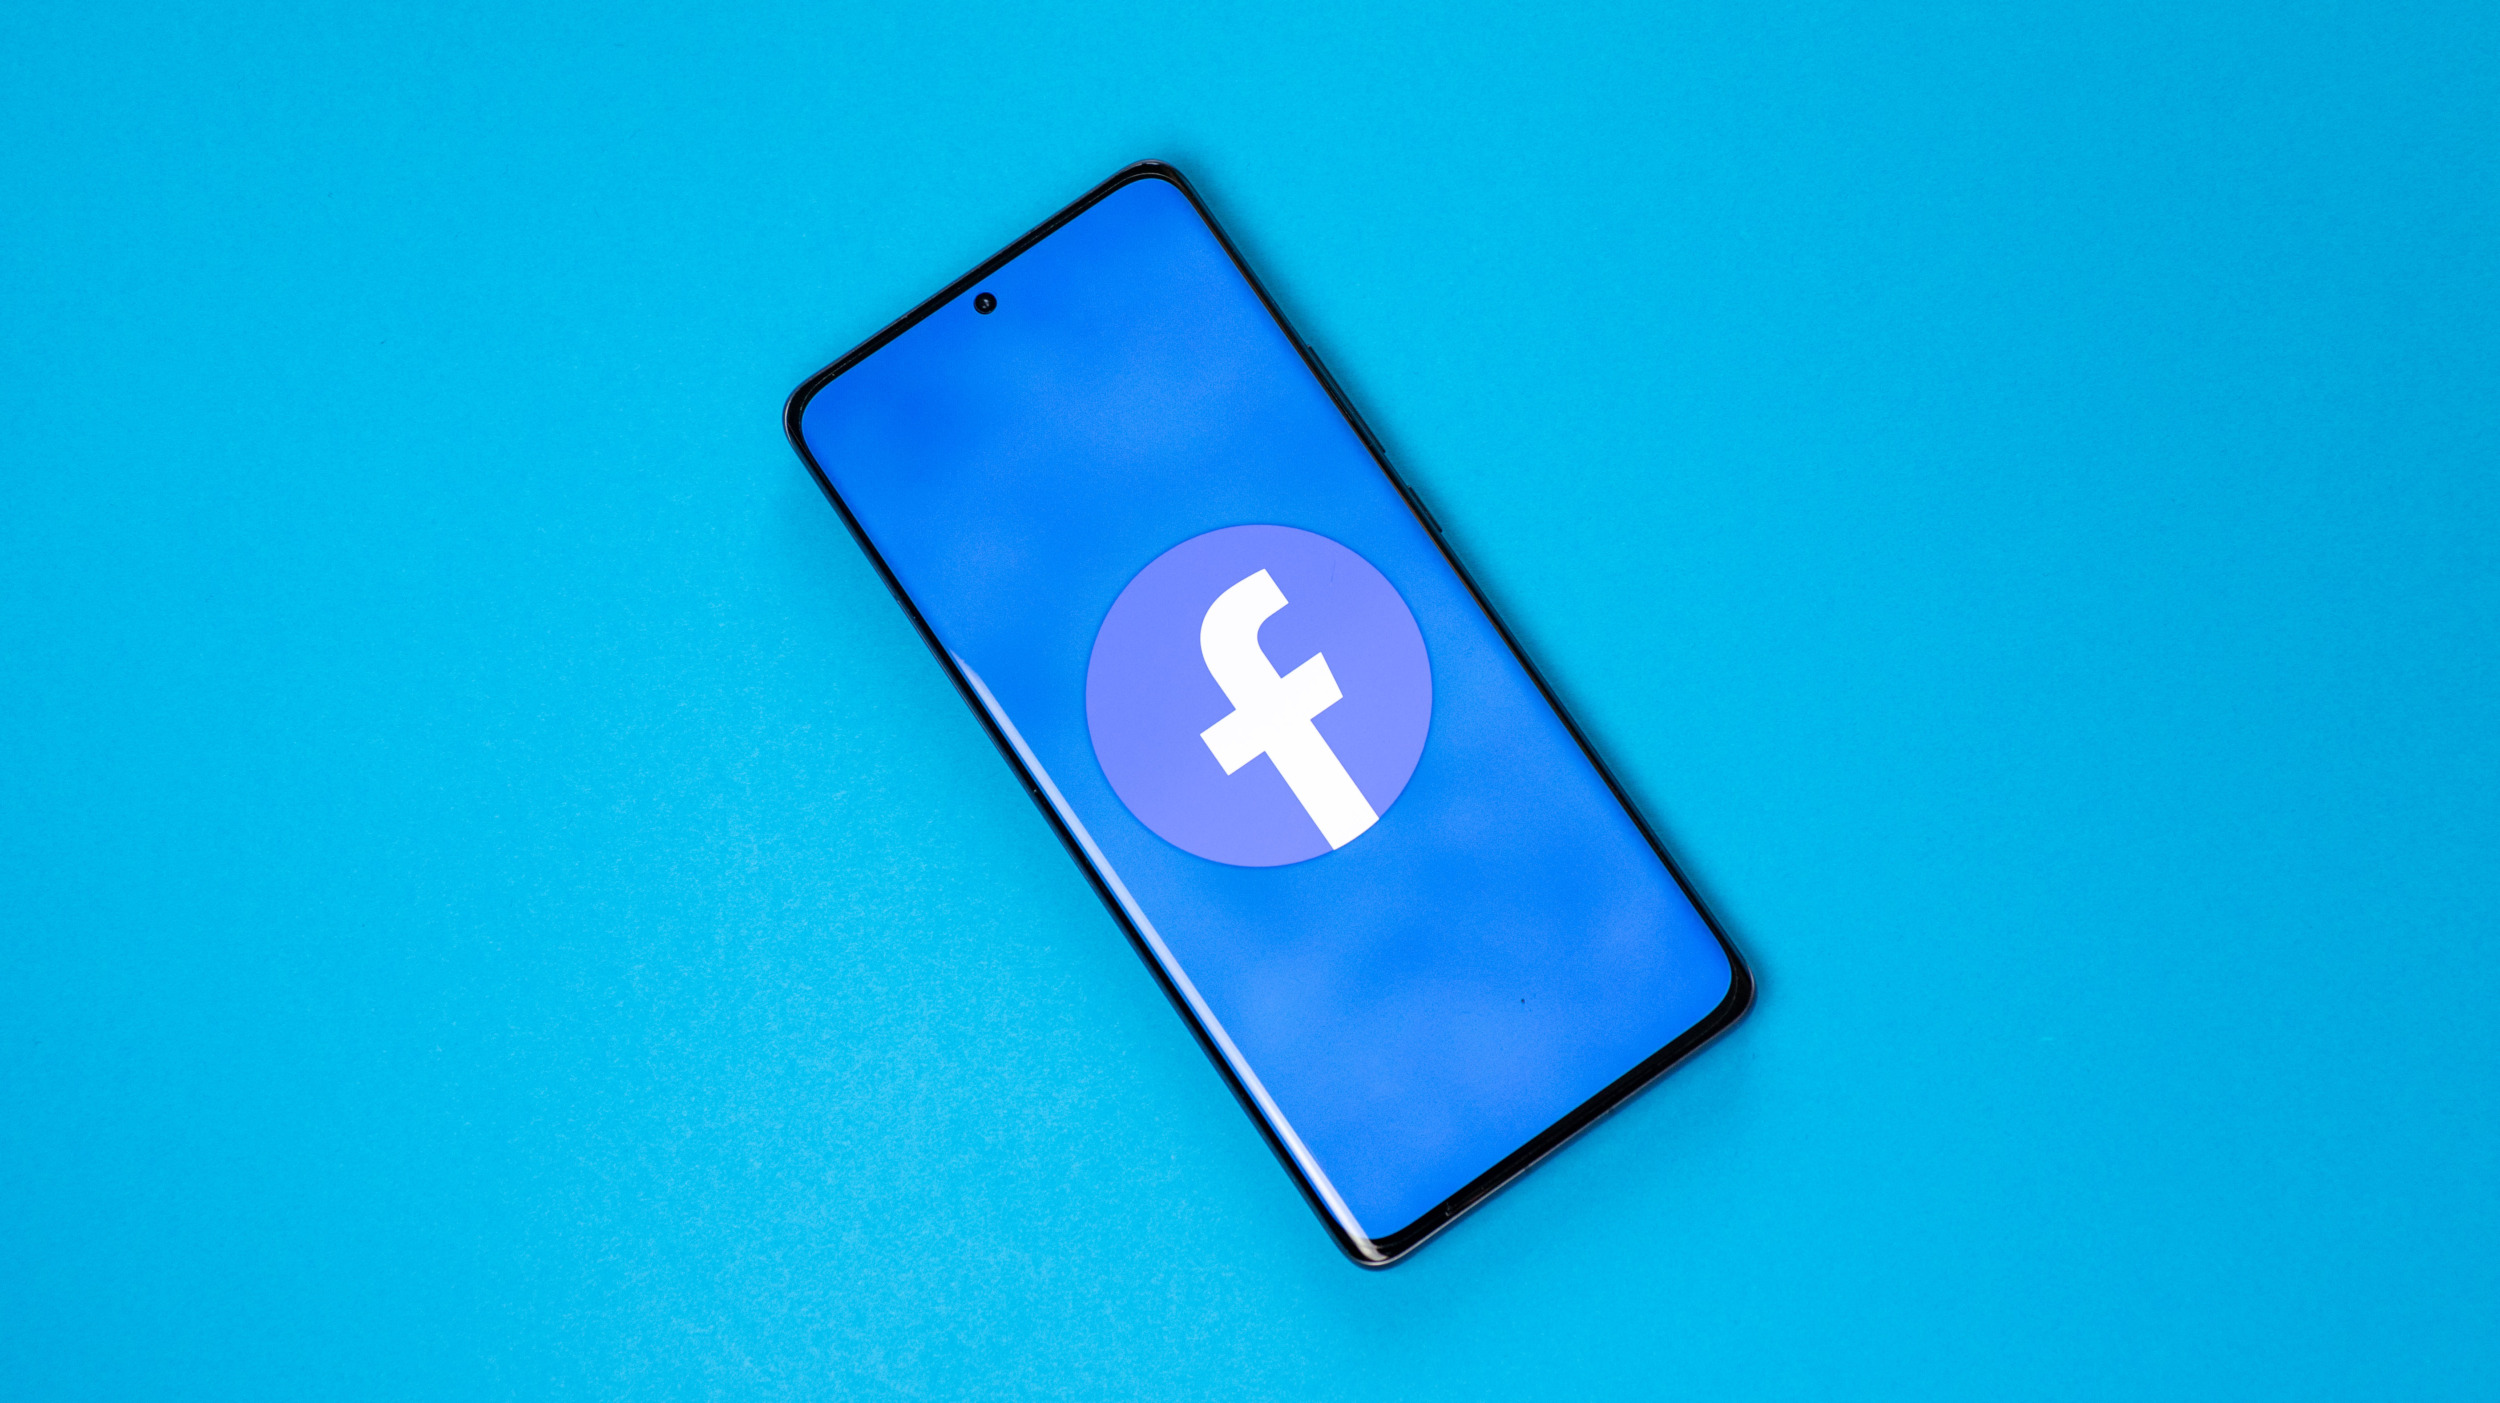 Facebook aplikace údajně vybíjí baterie telefonů záměrně, tvrdí bývalý zaměstnanec